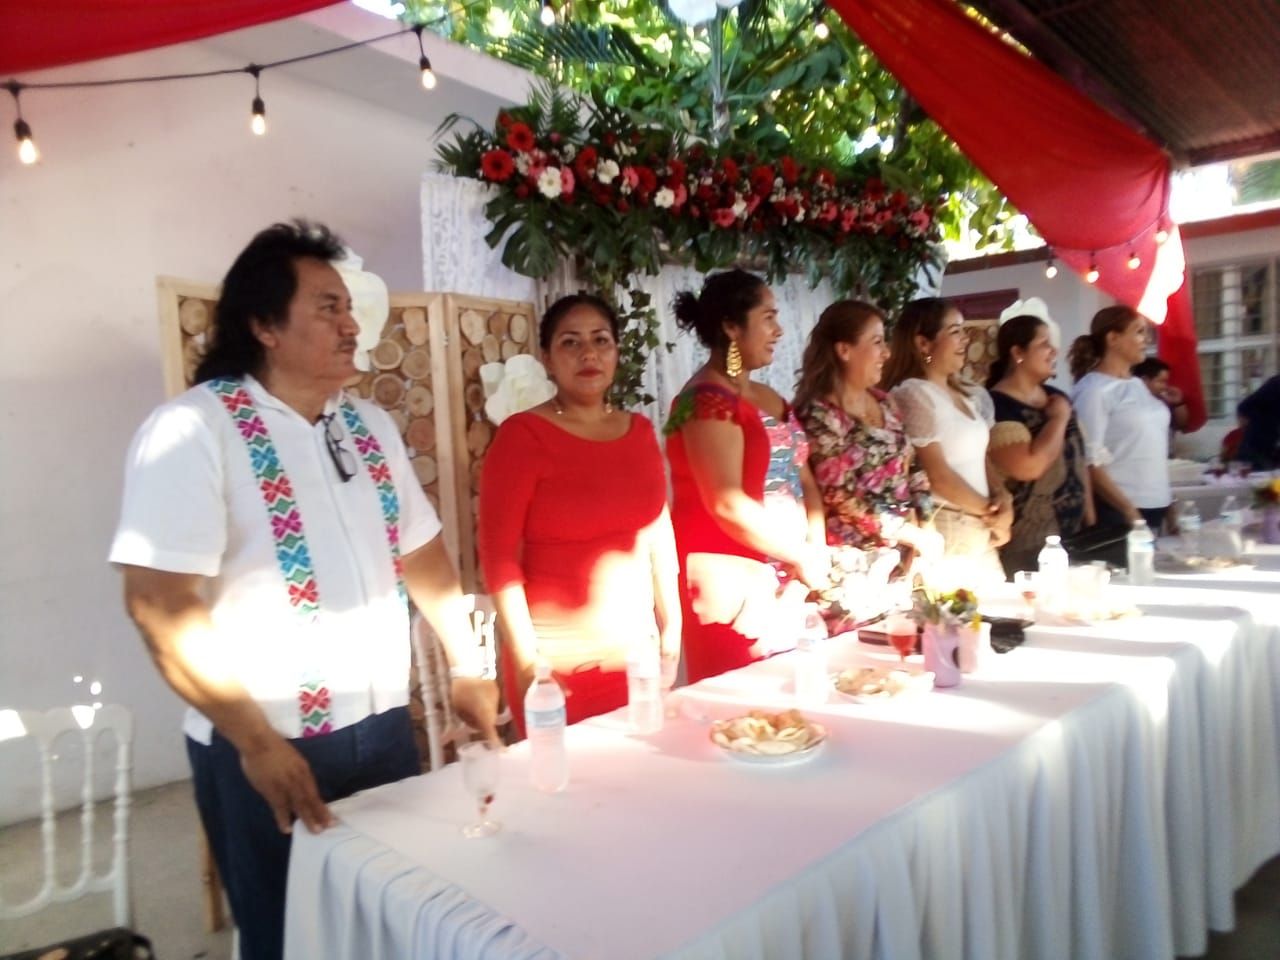 Se unen 10 parejas en San Marcos; aprovechan las bodas comunitarias impulsadas por el DIF local 